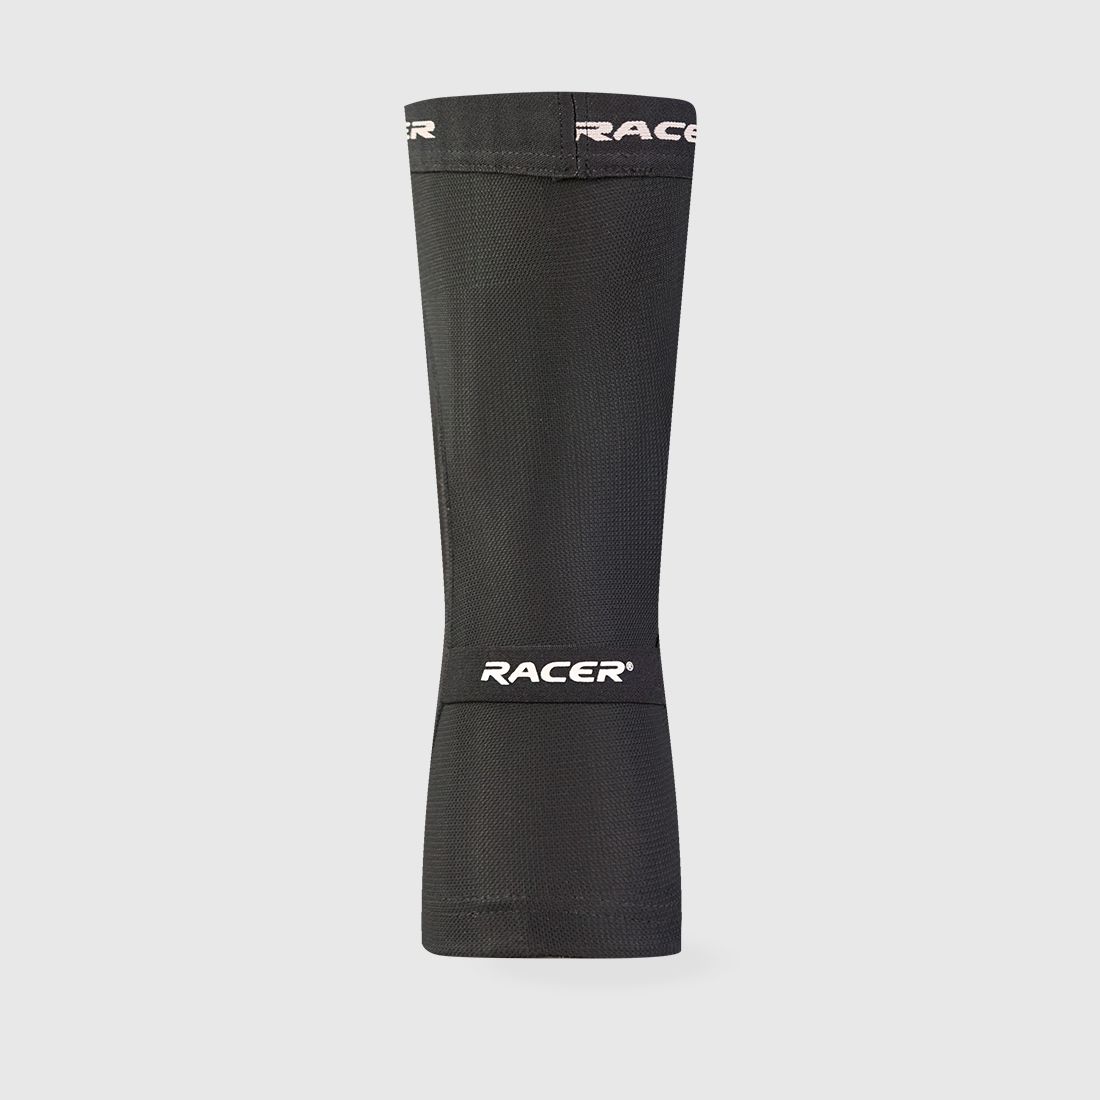 racer protection - flexair knee - bike knee pads